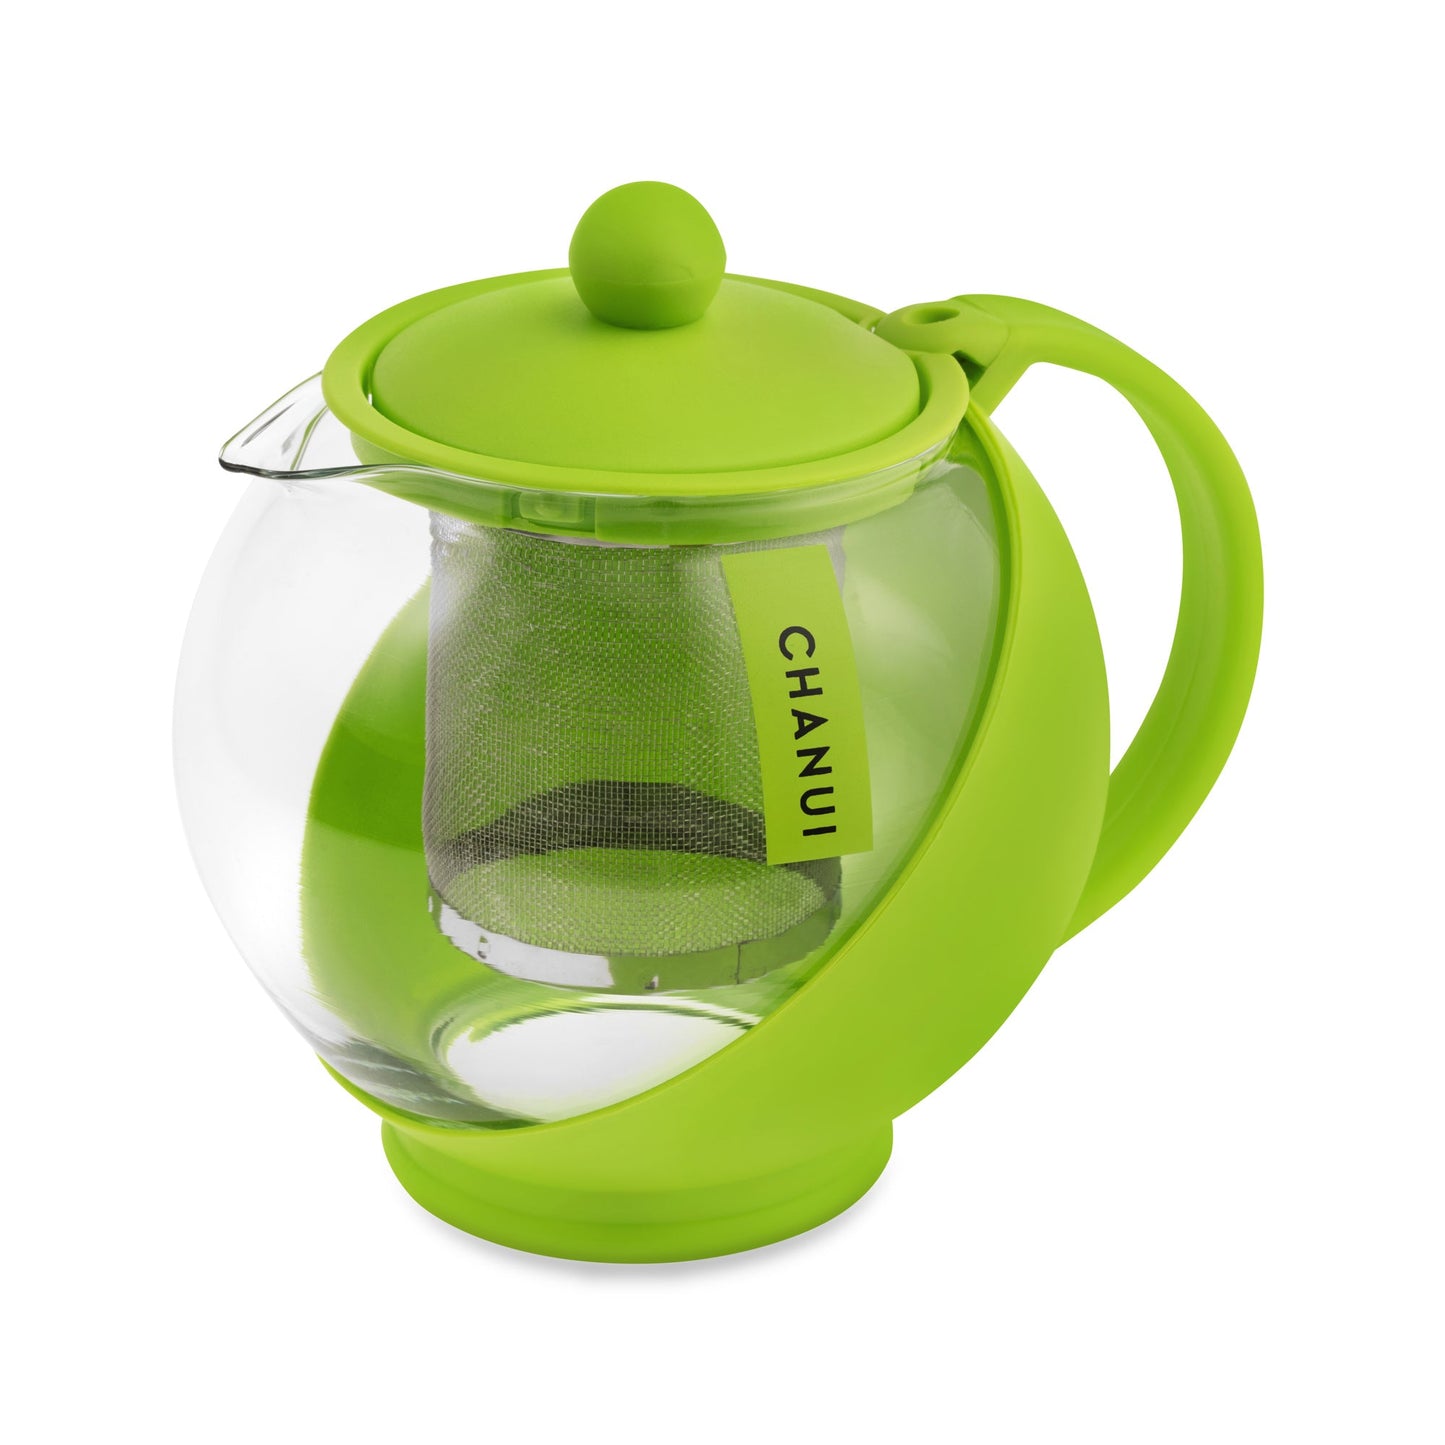 Chanui Green colour teapot. 750ml.